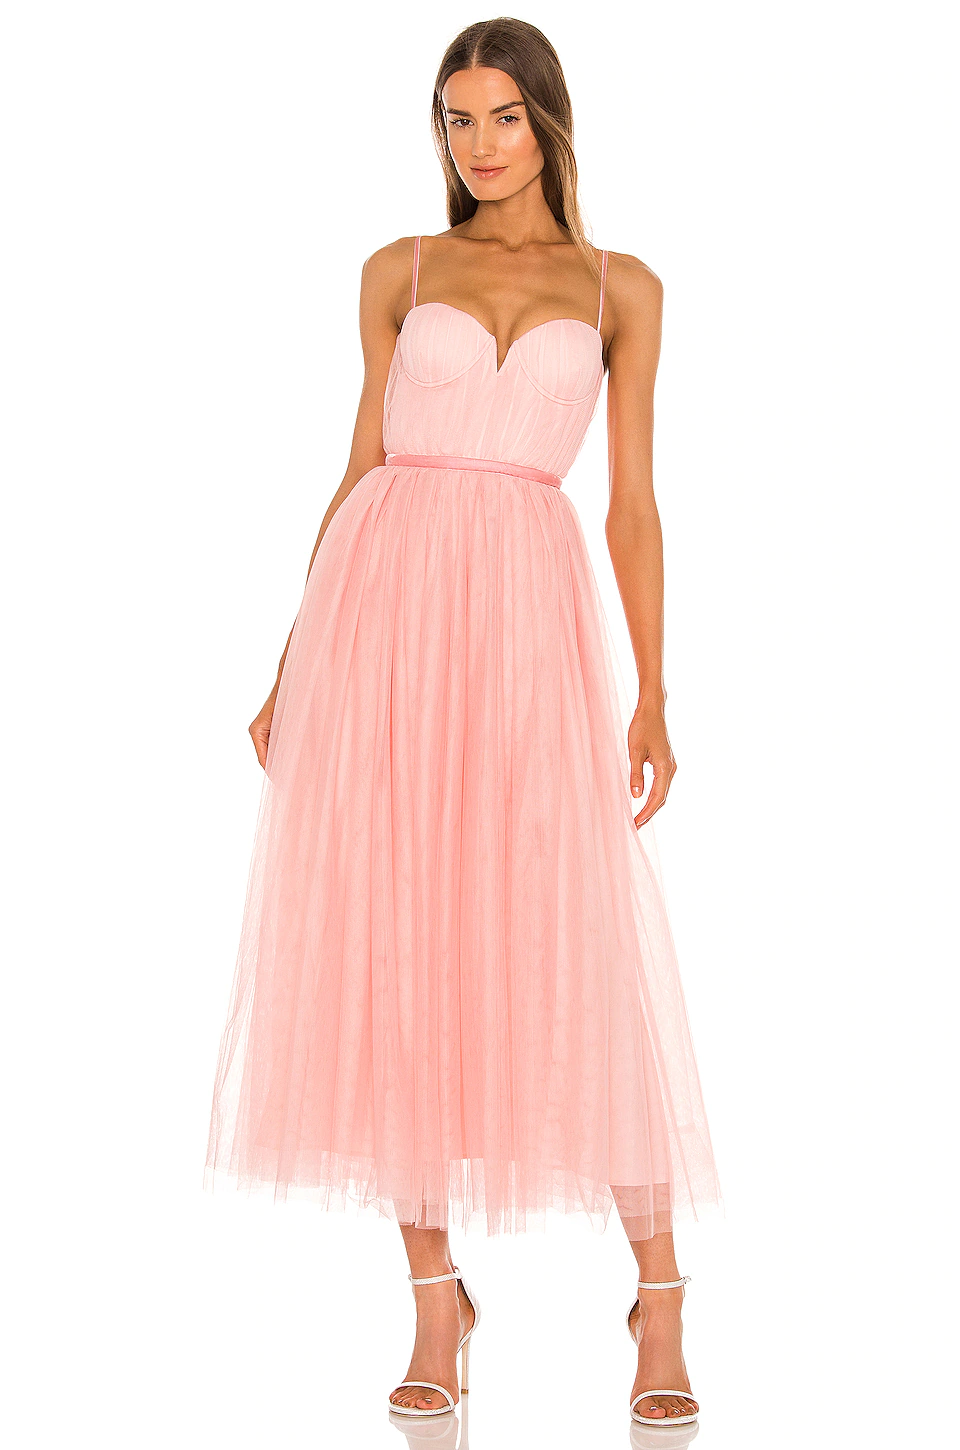 blush pink tulle midi wedding dress